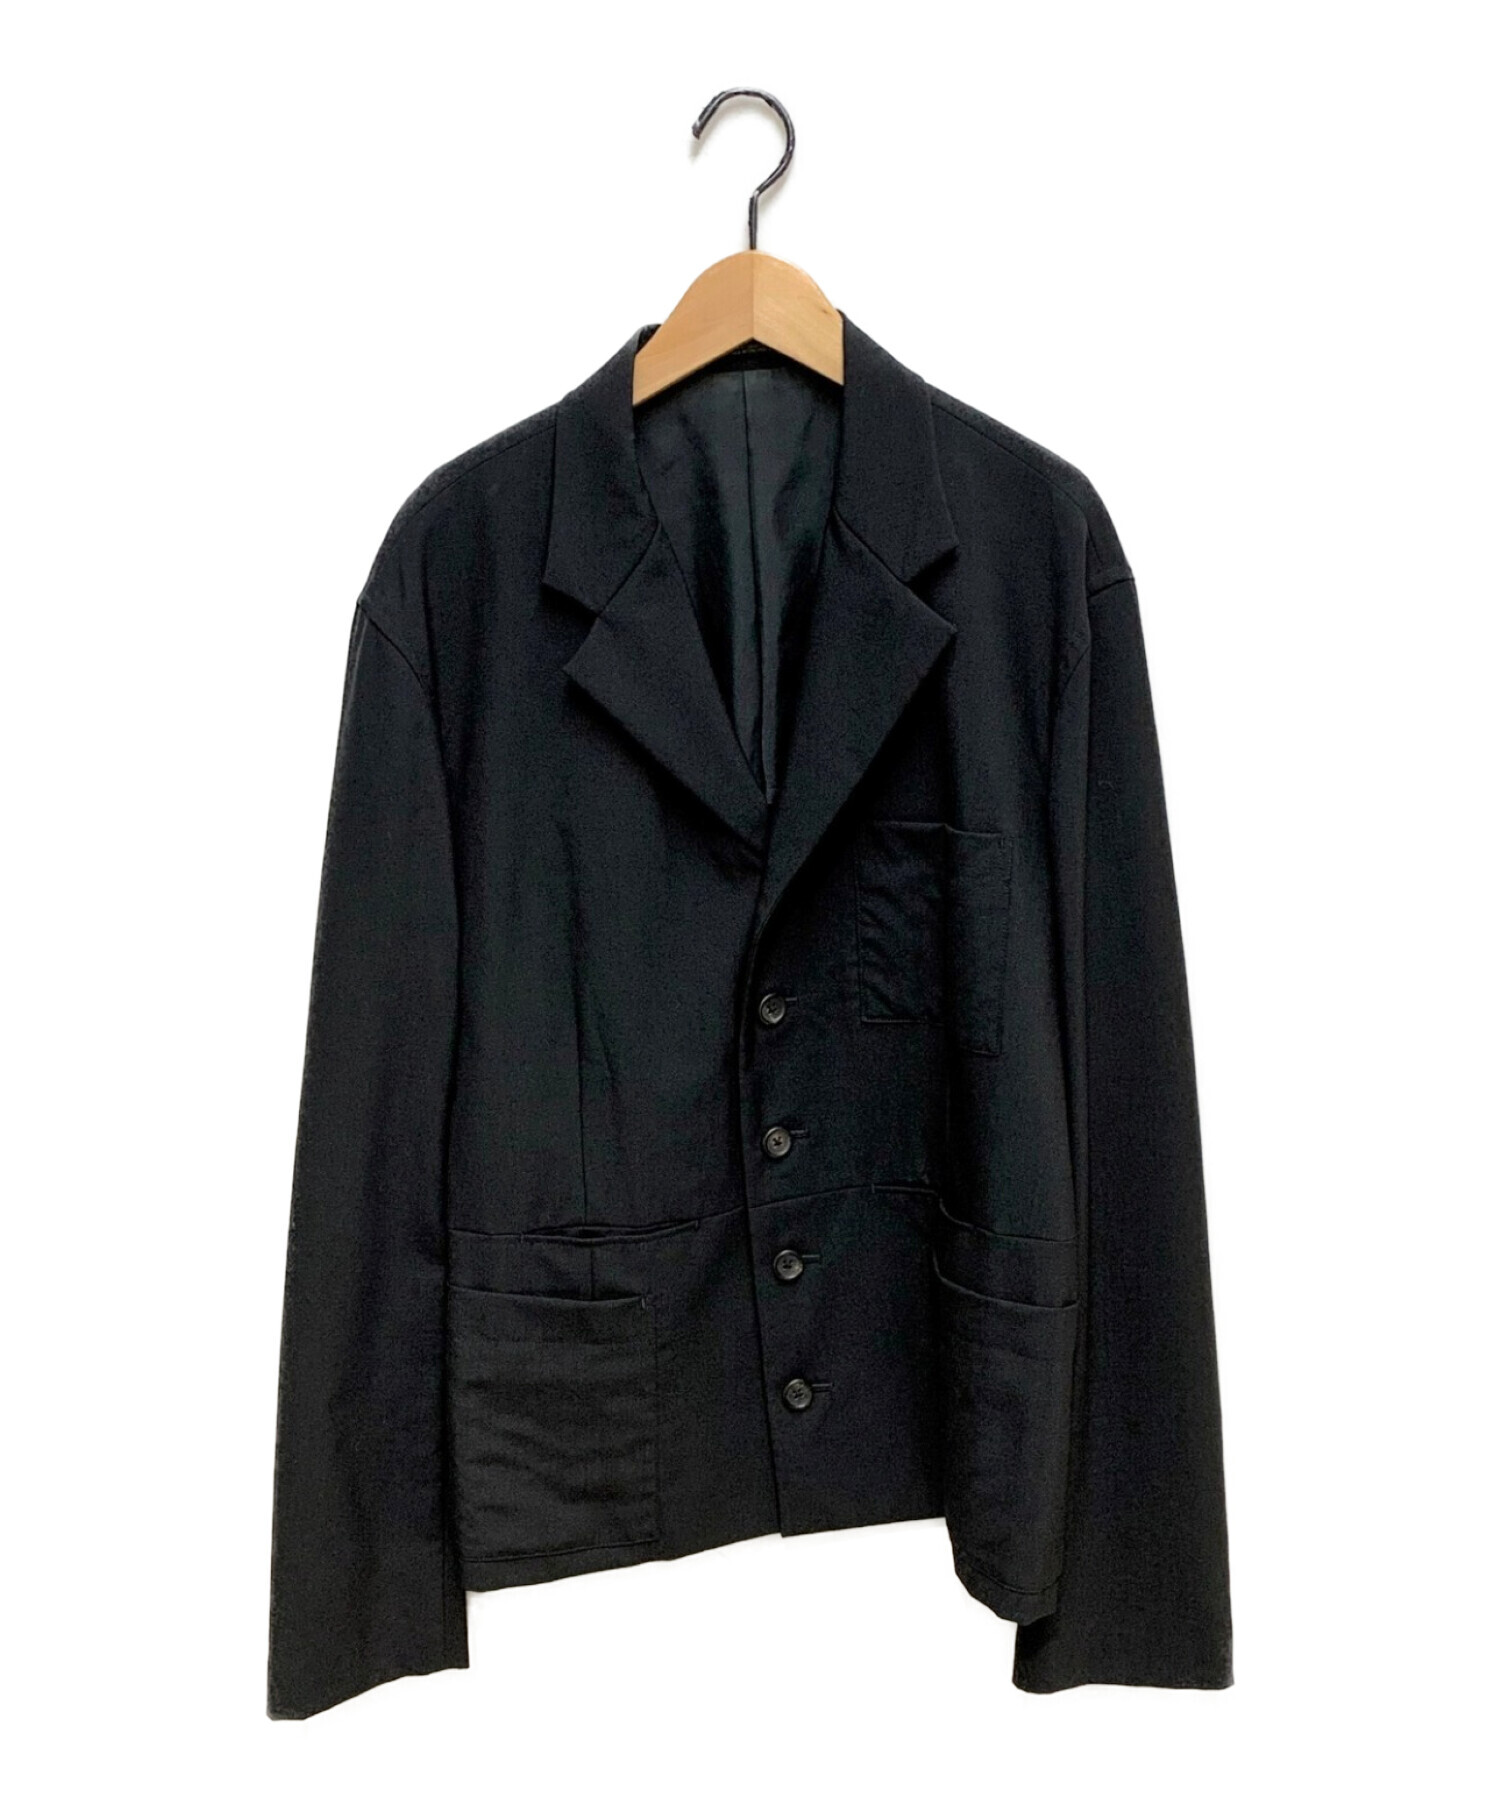 Yohji Yamamoto pour homme (ヨウジヤマモトプールオム) 93SS ポケットデザインロングジャケット ブラック サイズ:M